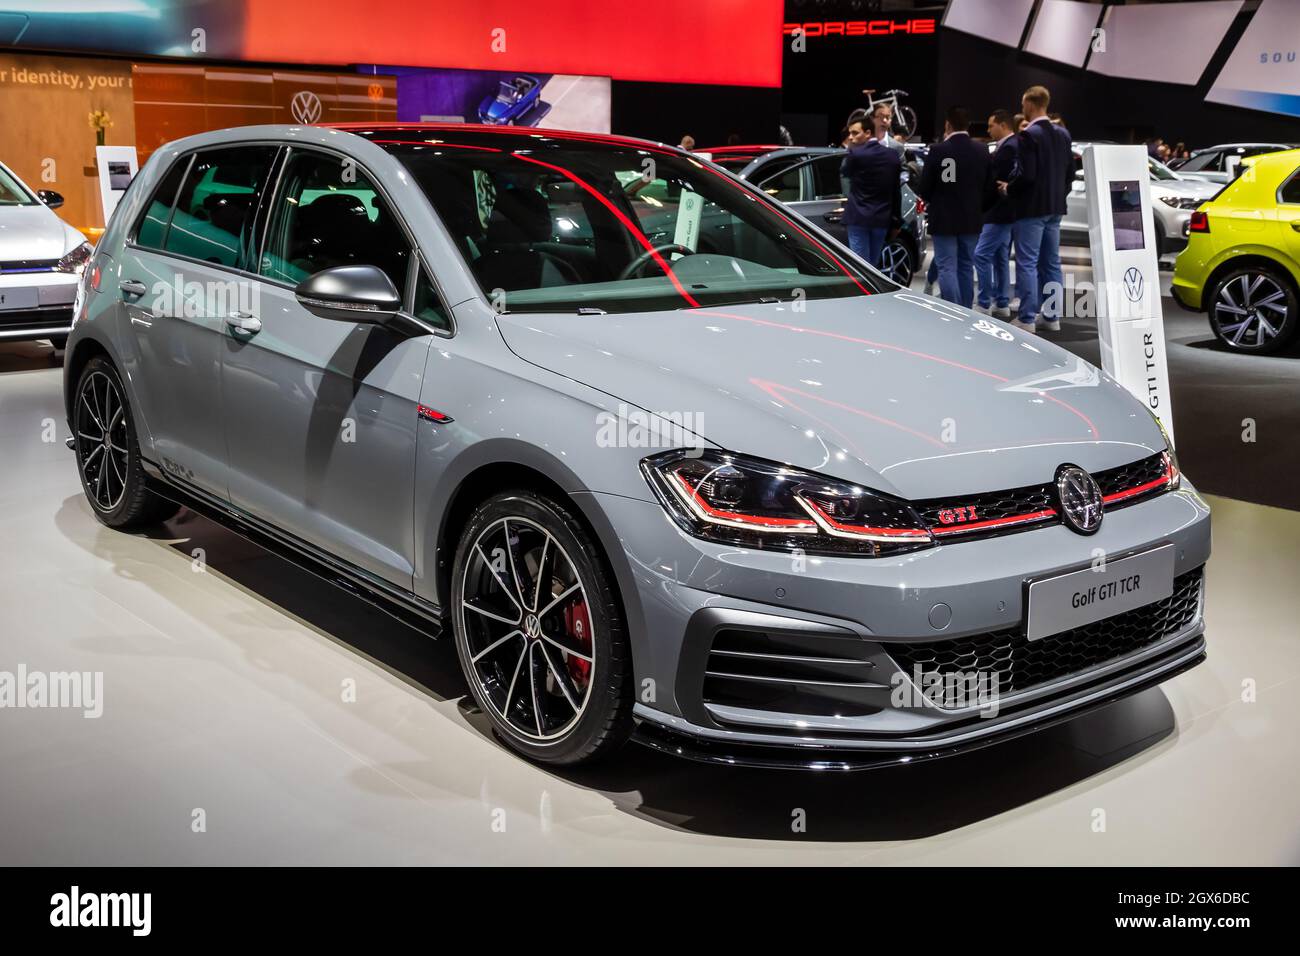 La voiture Volkswagen Golf GTI TCR a été présentée au salon automobile Autosalon 2020. Bruxelles, Belgique - 9 janvier 2020. Banque D'Images